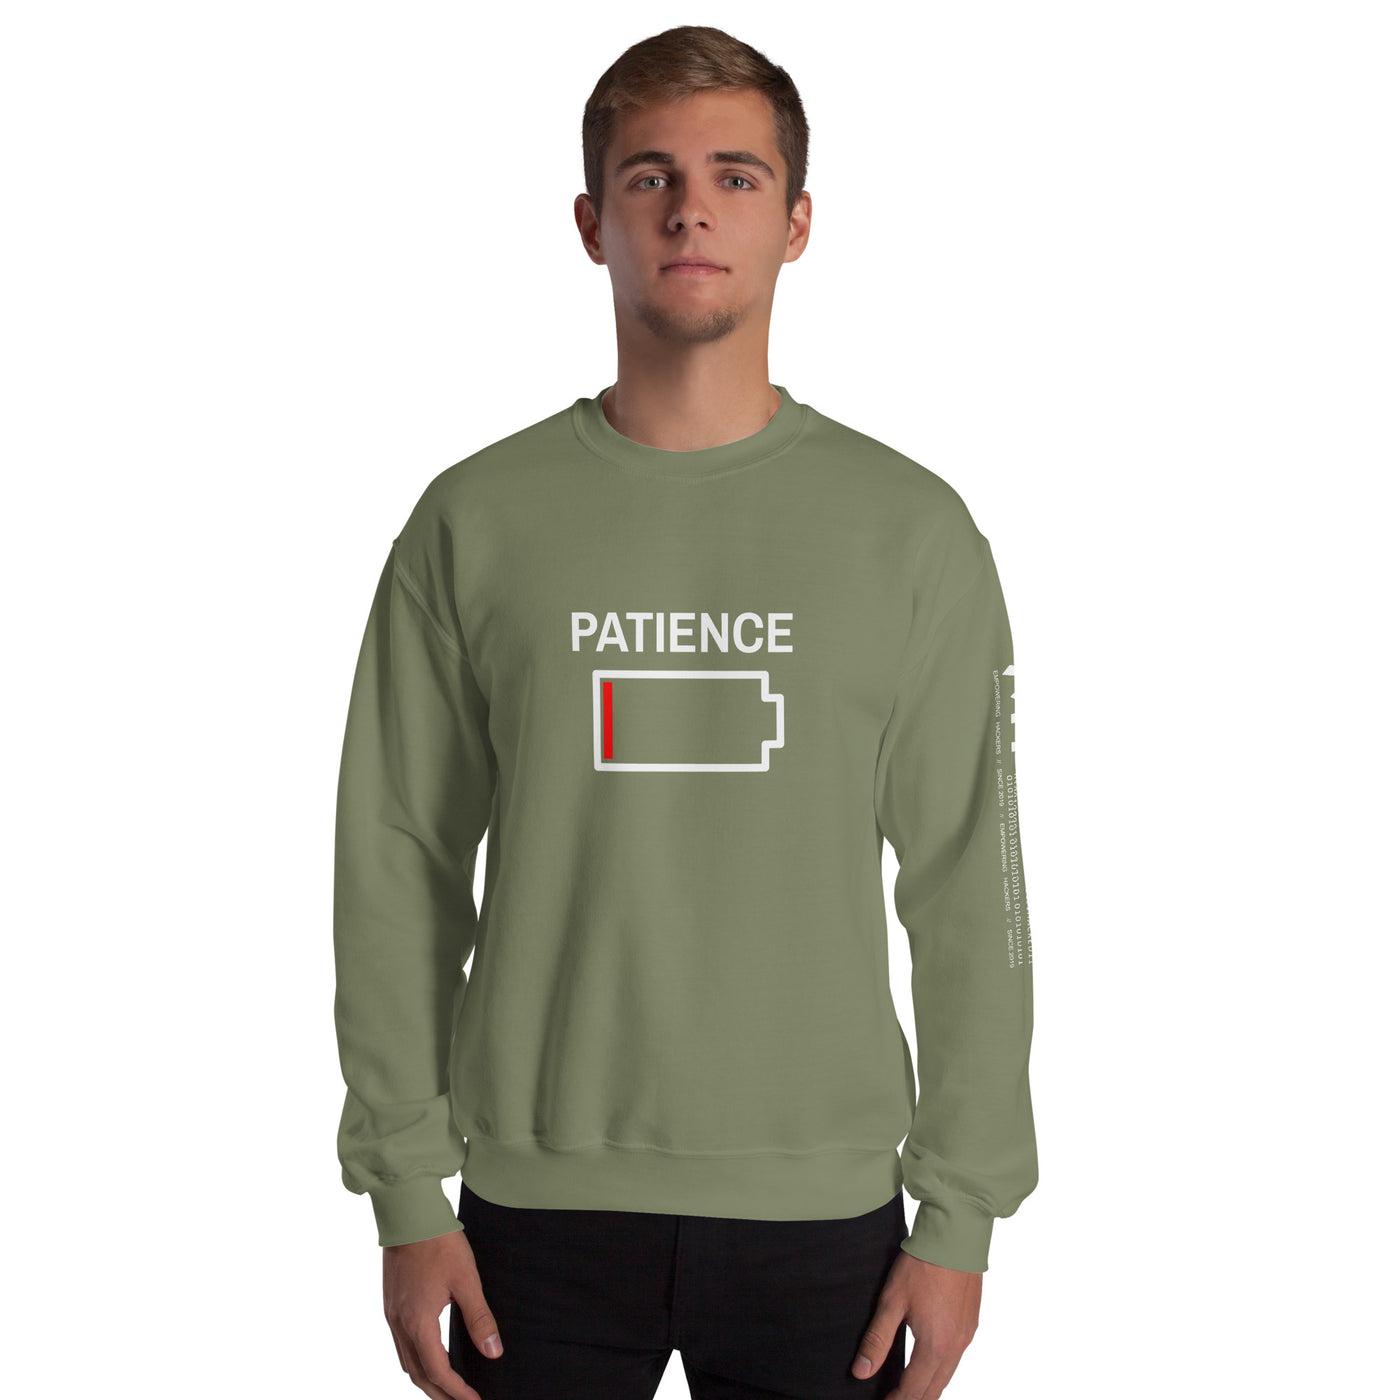 Patience - Unisex Sweatshirt